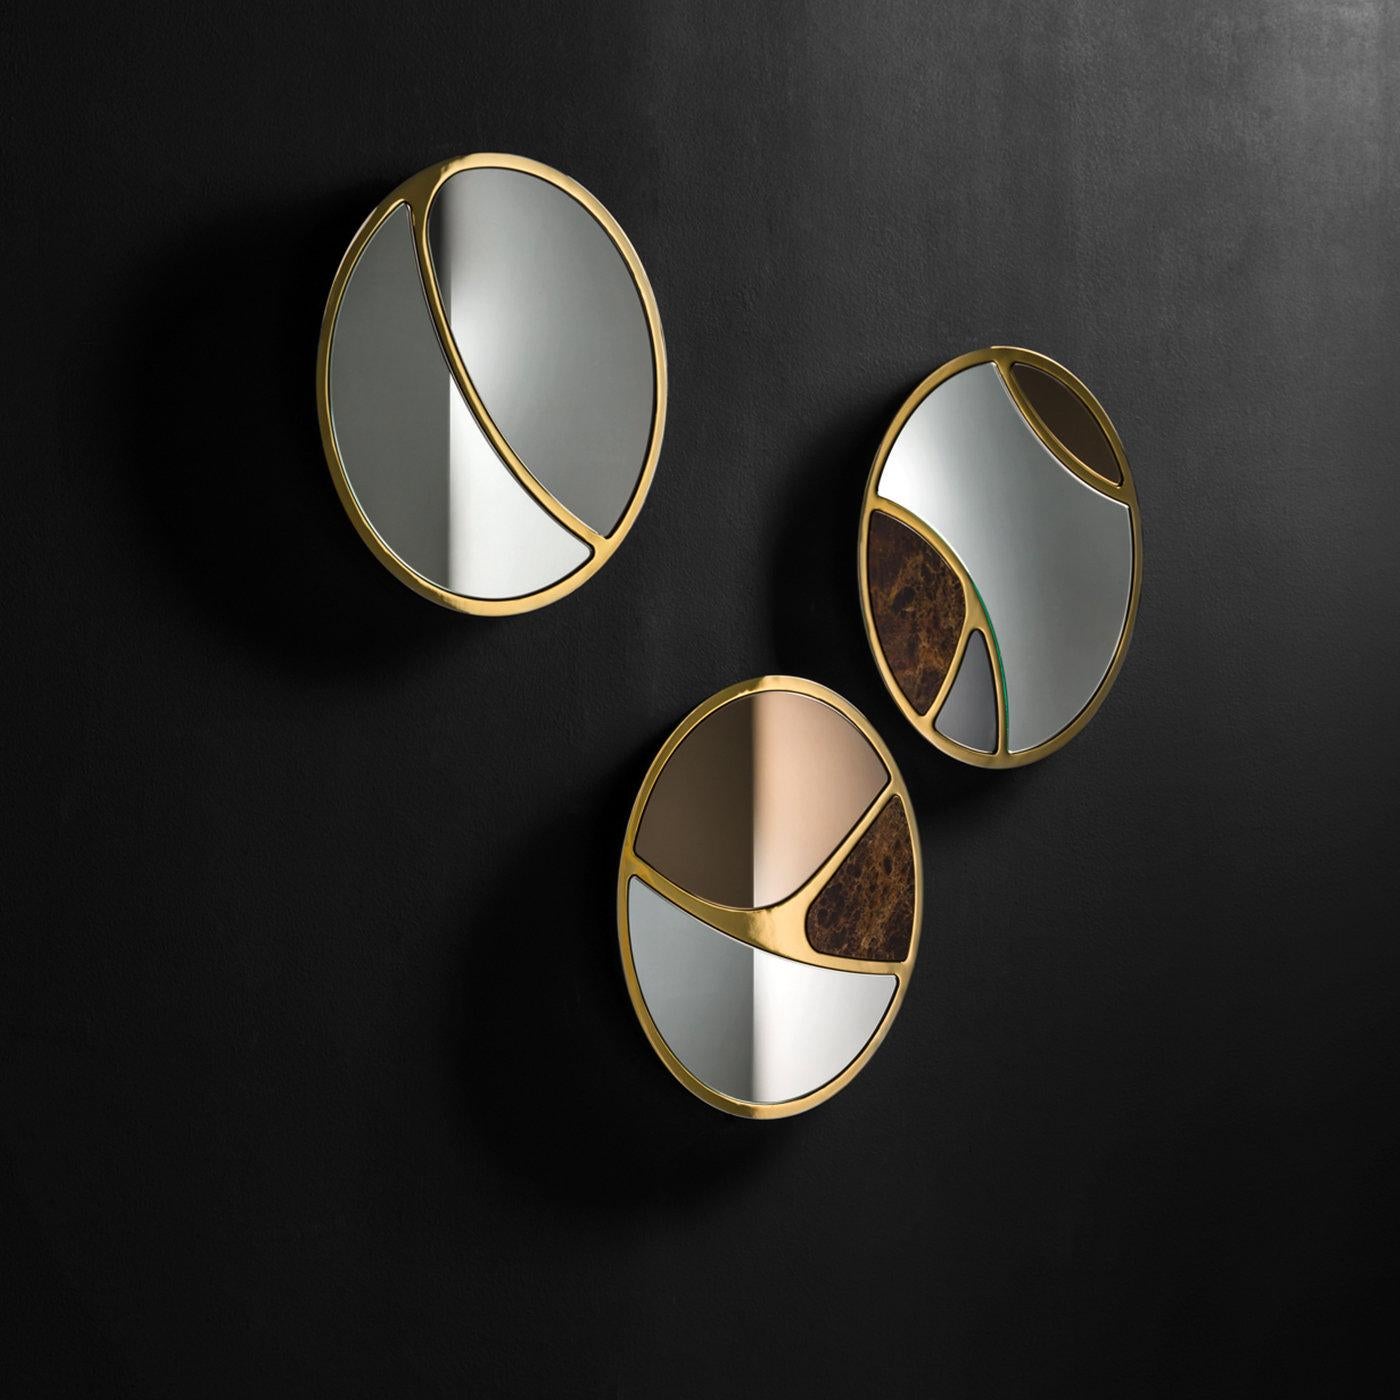 Combinaison de matériaux raffinés dans un design unique, ce miroir comporte trois sections, élégamment divisées par un cadre en métal découpé au laser avec une finition bronze : une en marbre Emperador, une en gris fumé et la plus grande section en